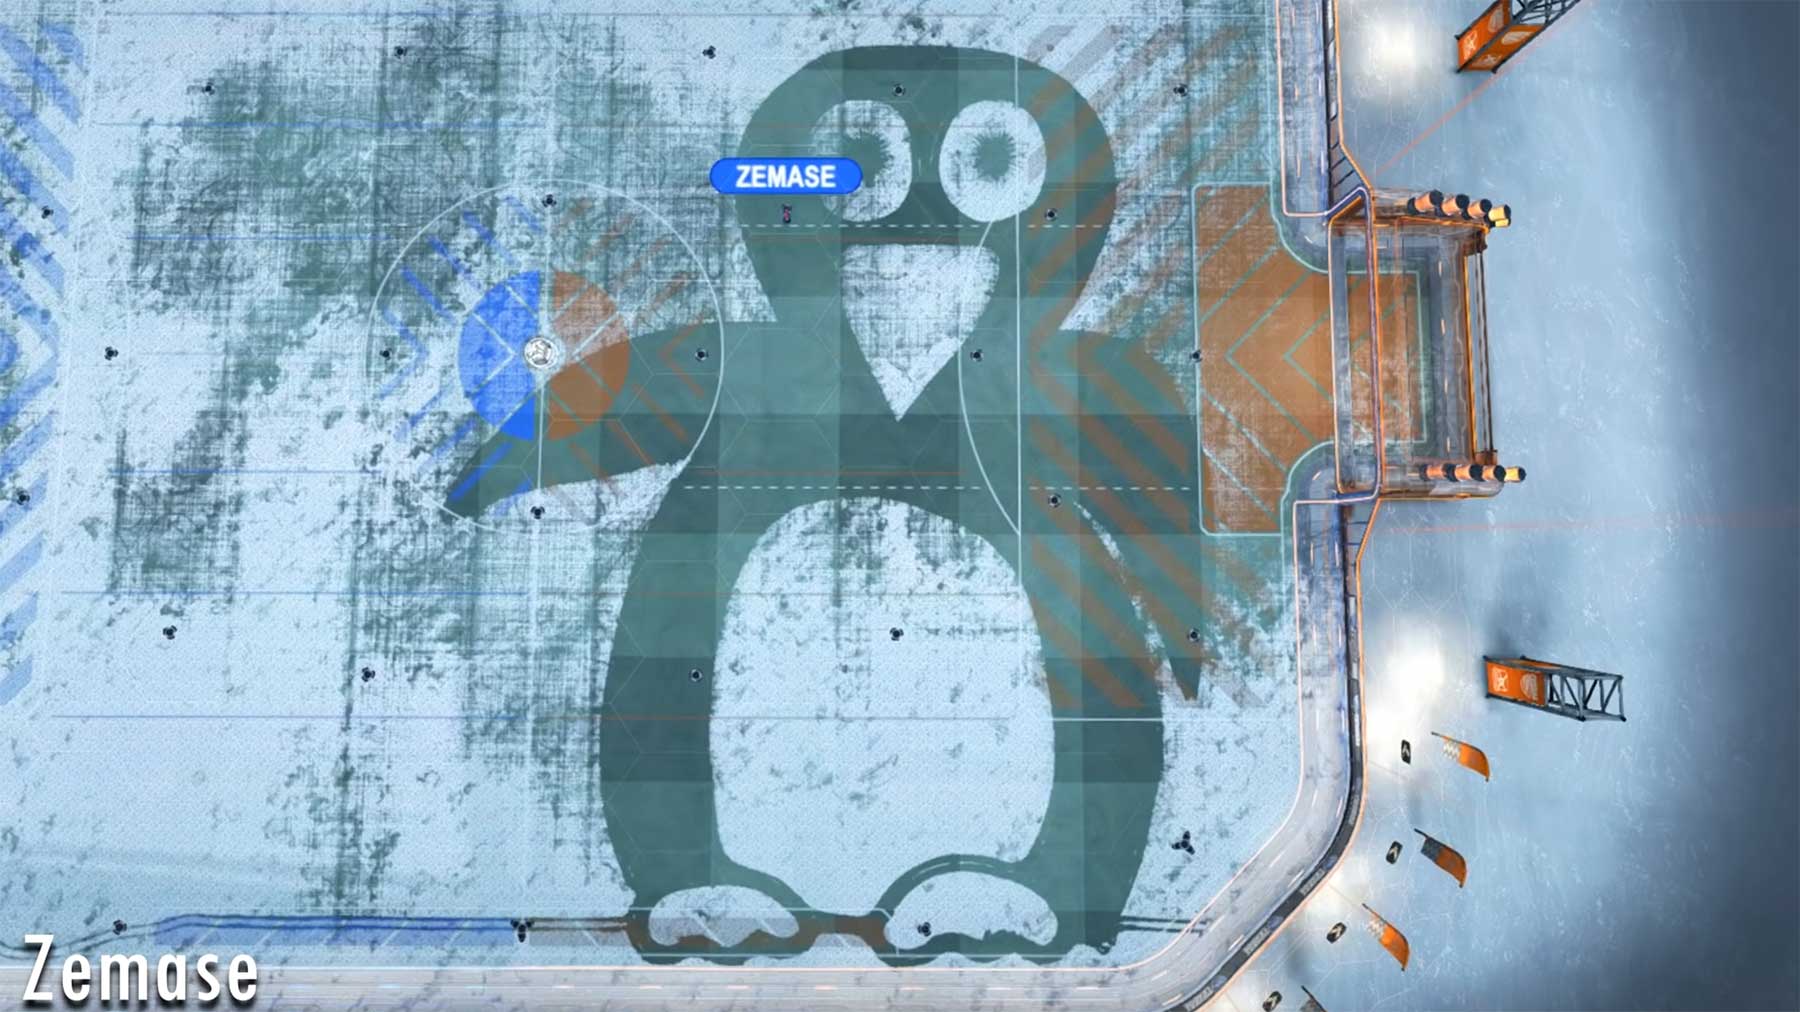 Stimmt für mich ab bei der "Snow Art Competition 2“! snow-art-competition-2-zemase-penguin 